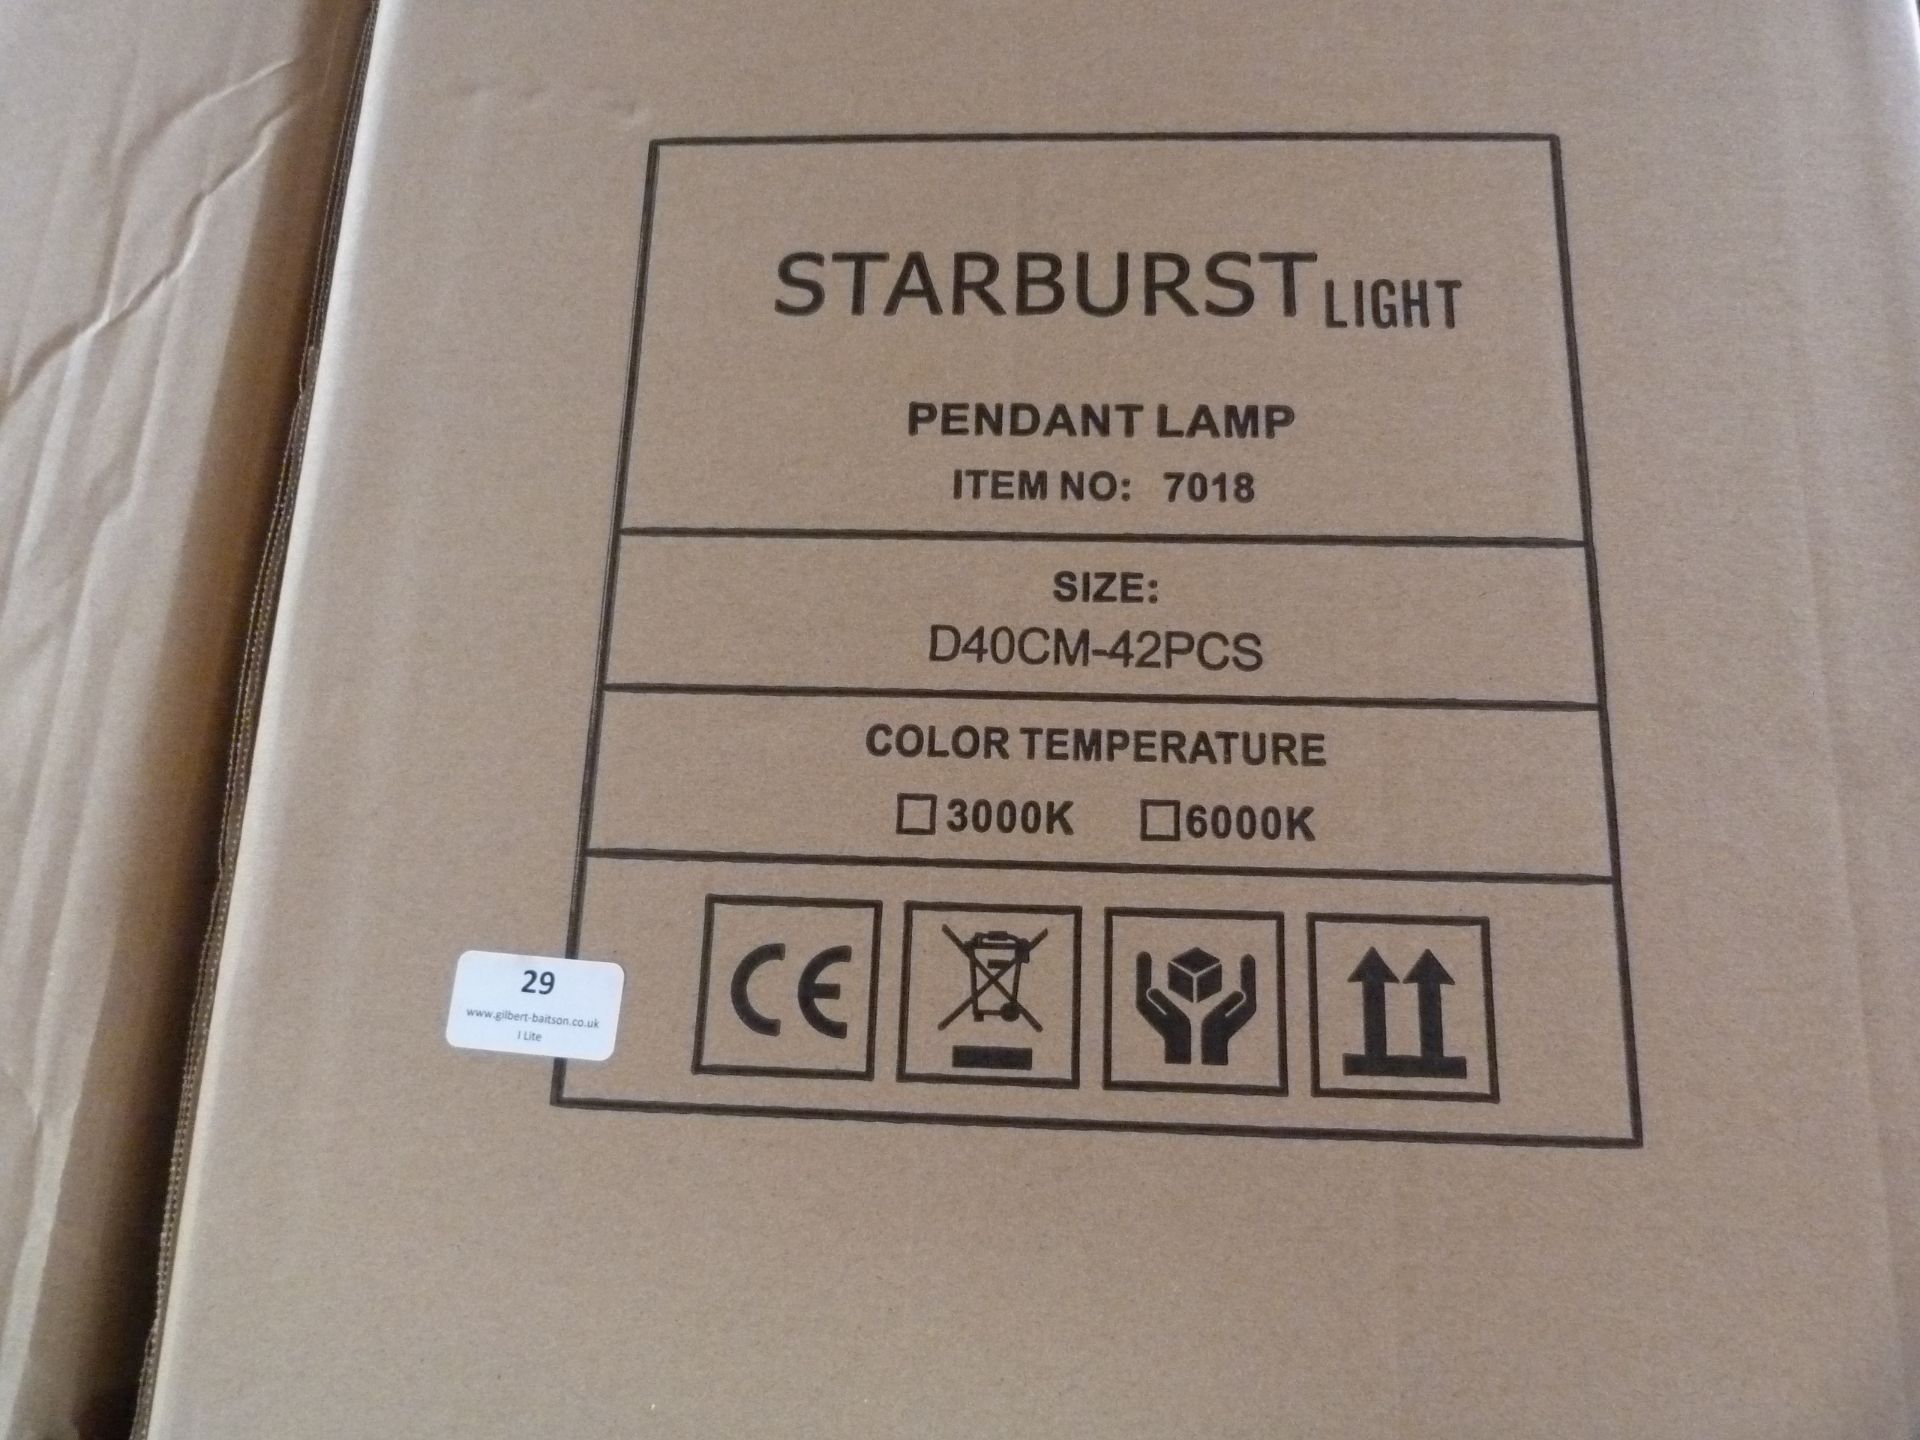 *22 Starburst Pendant Lamps Item No.7018, Size: D40CM-42PCS - Image 2 of 3